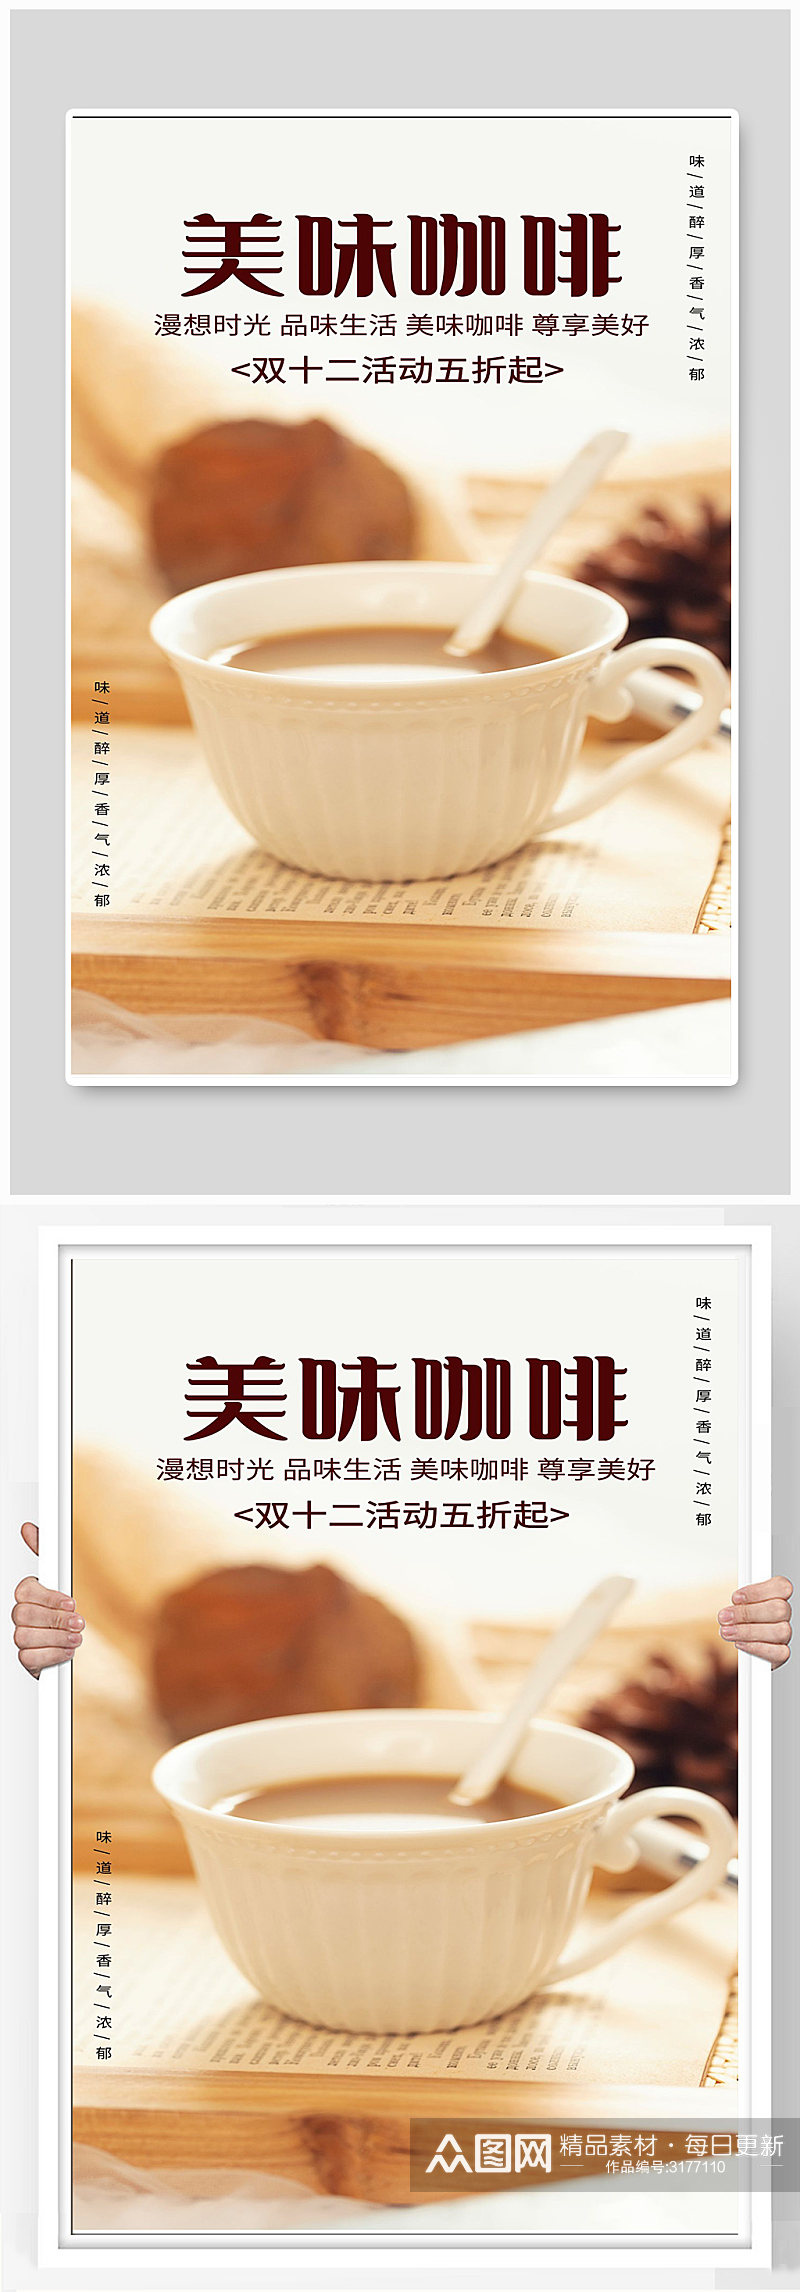 美味咖啡宣传海报设计素材